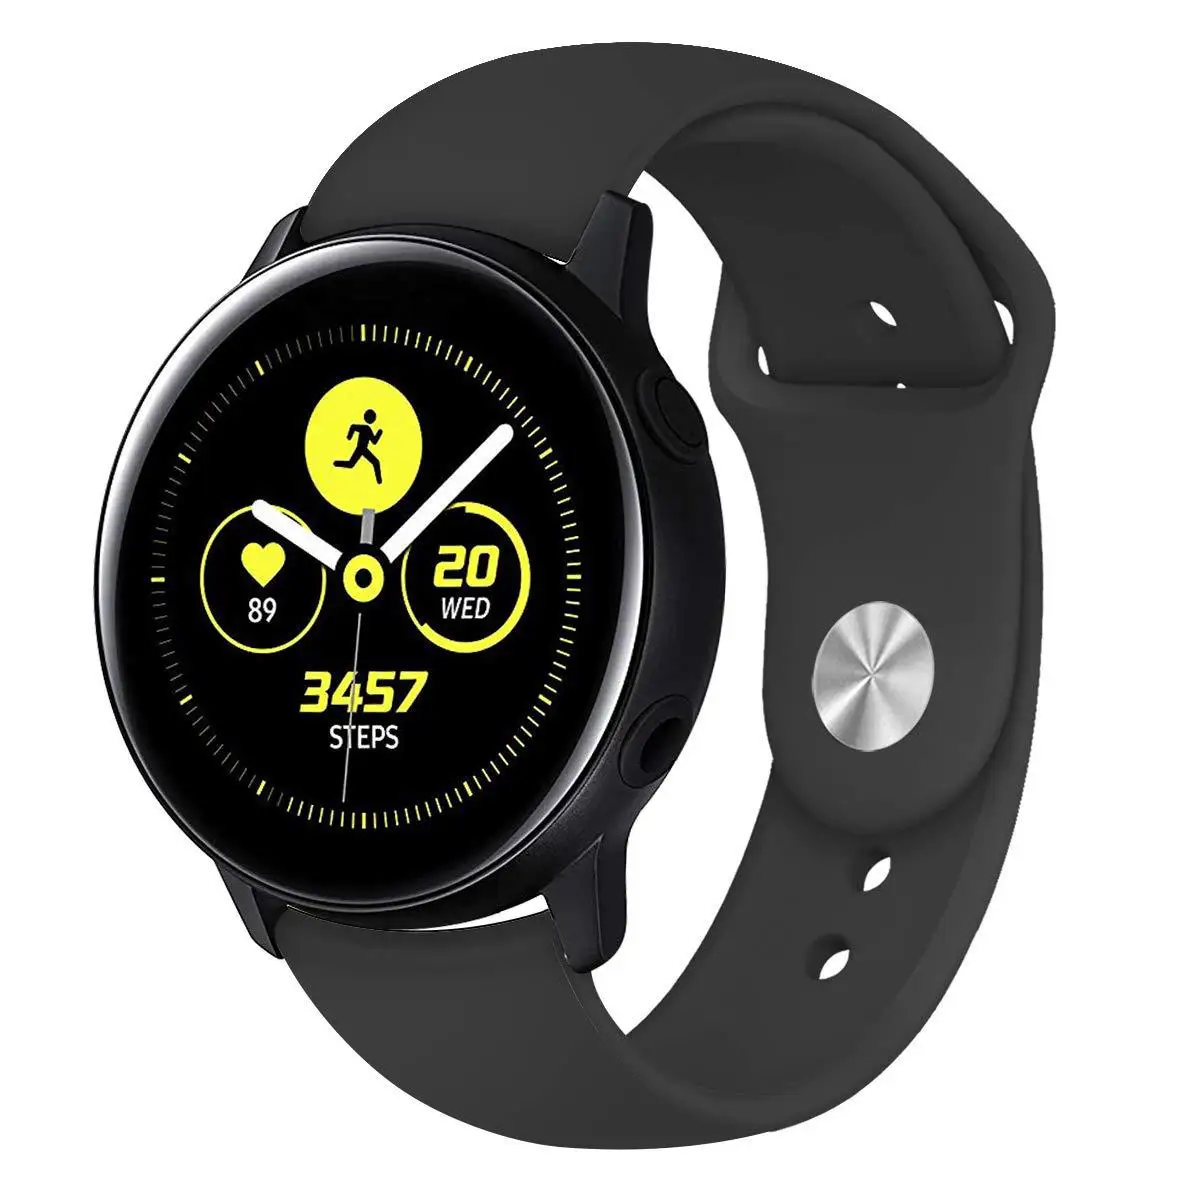 20 мм Силиконовые мягкие полосы для Xiaomi Huami Amazfit Bip ремень часы браслет для galaxy Watch 42 мм/gear S2 спортивный браслет